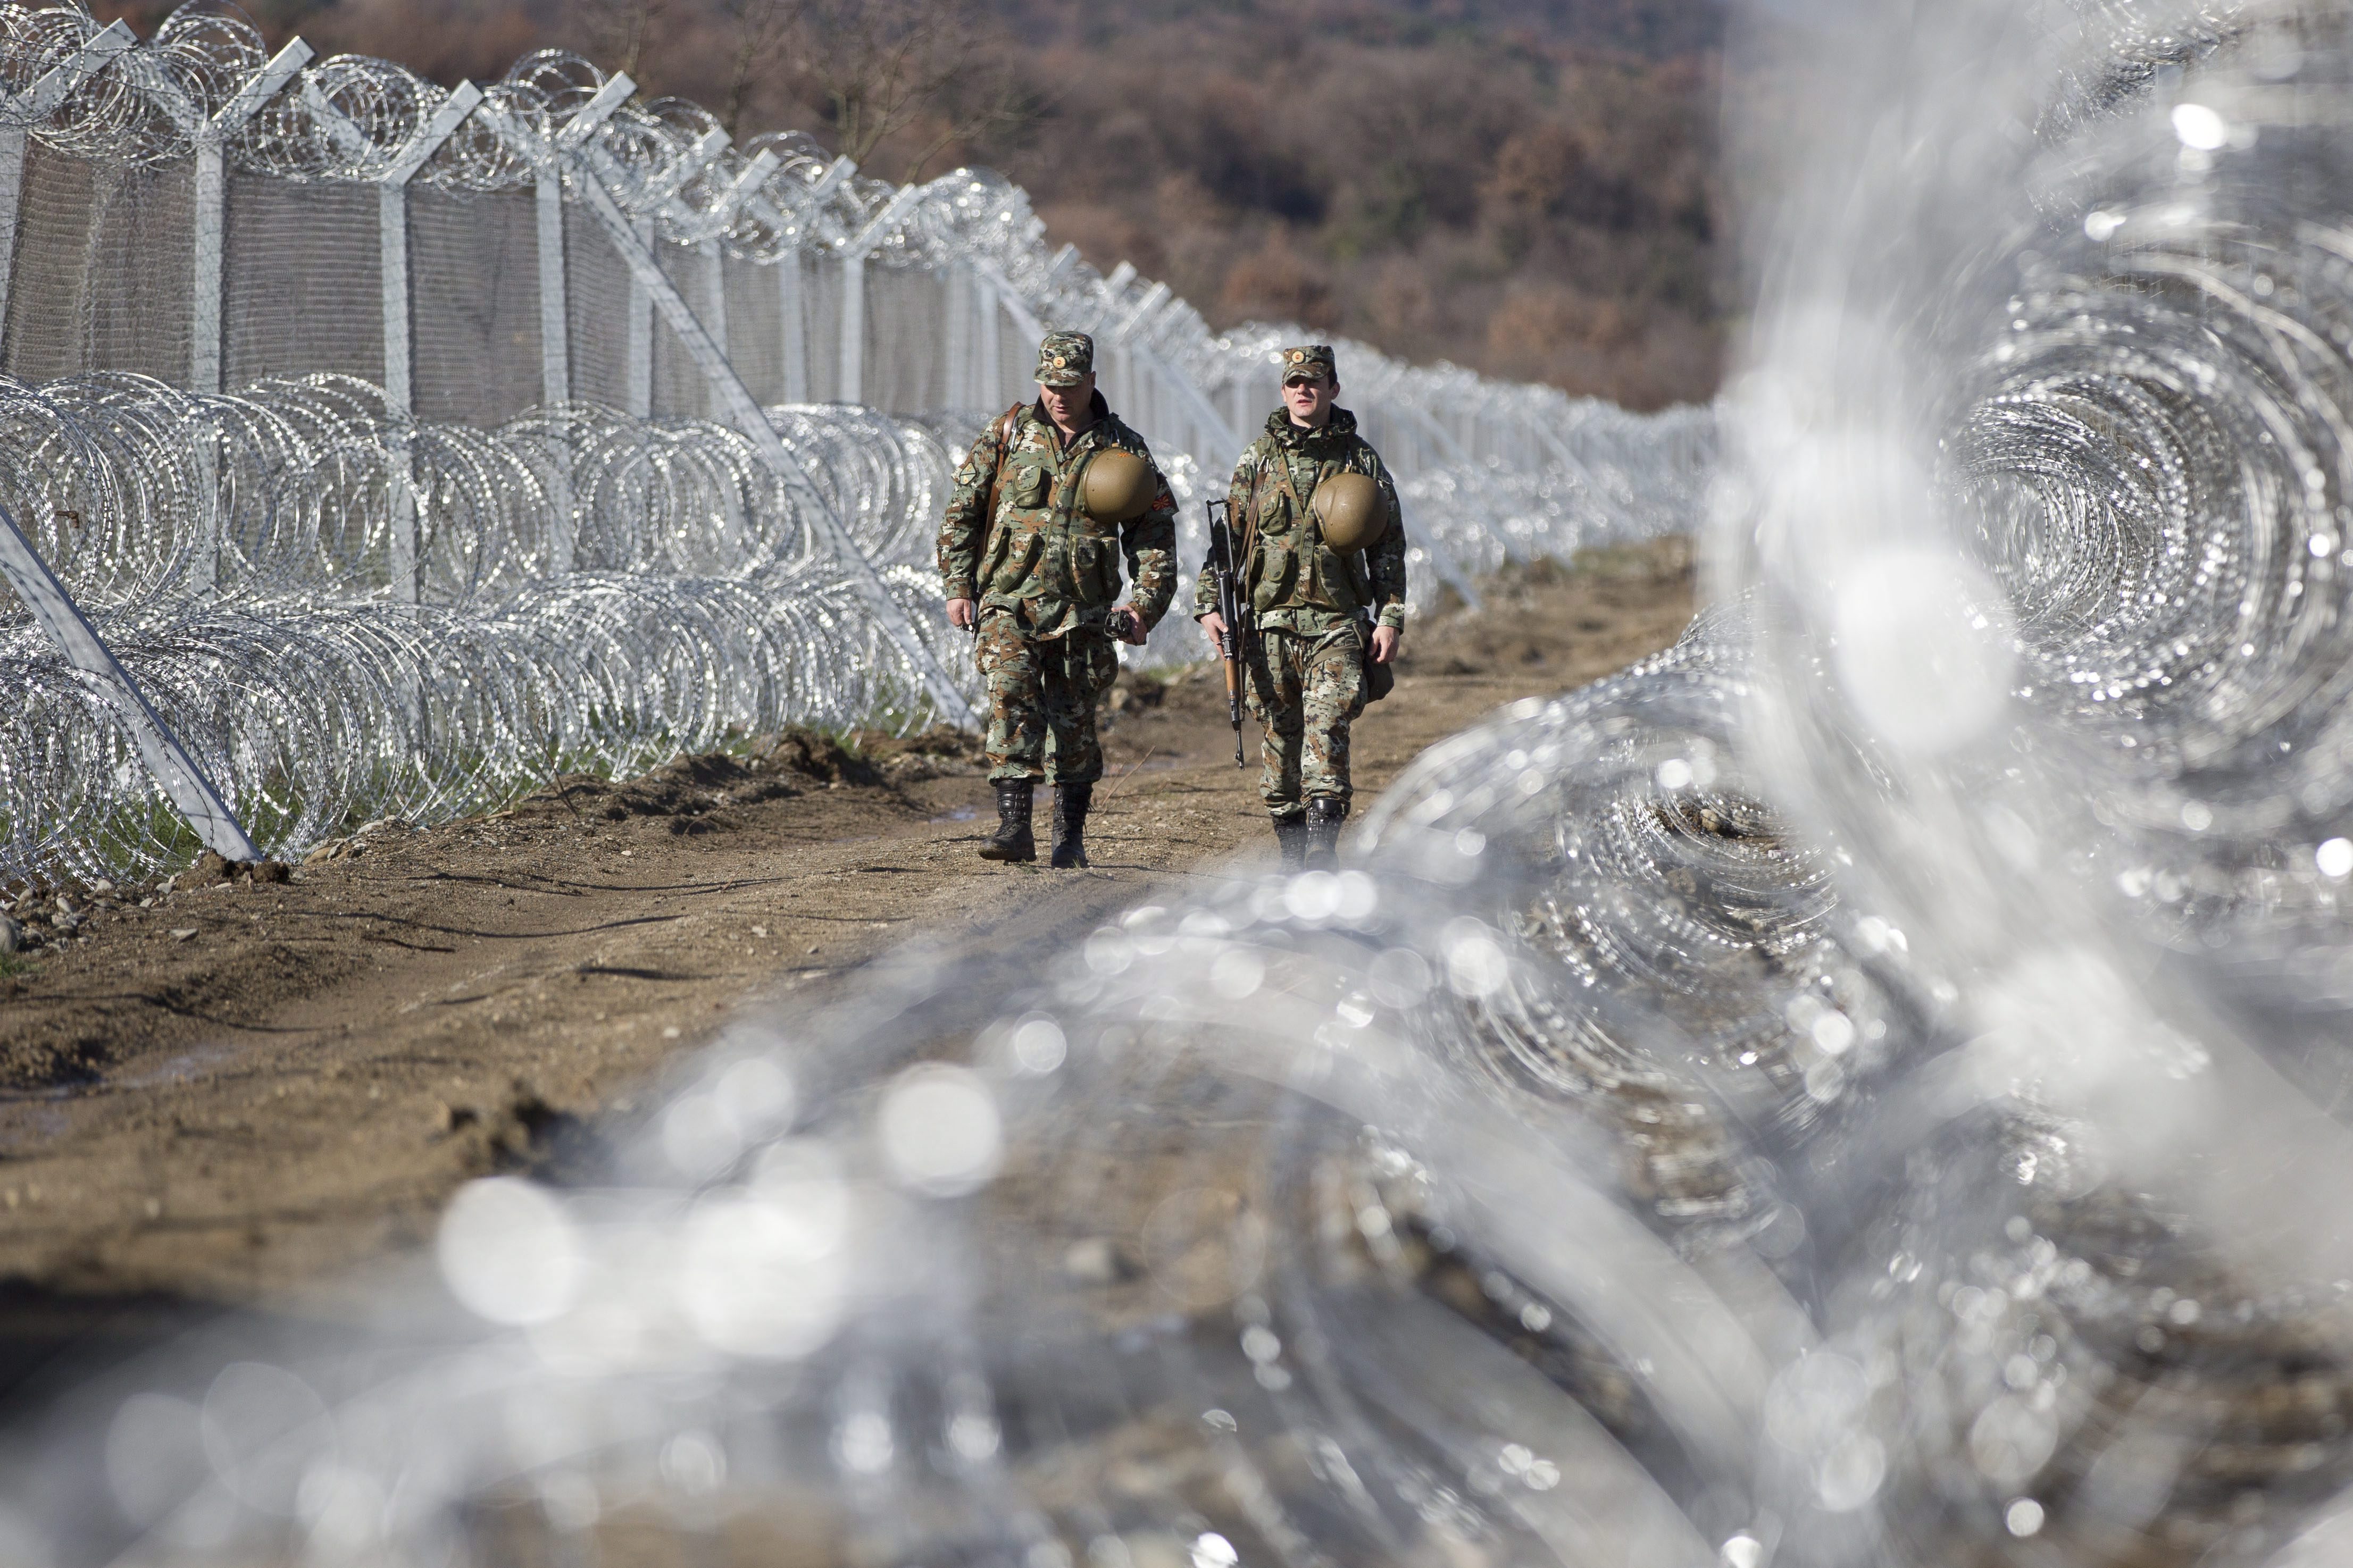 Gevgelija, 2016. március 4. Macedón katonák járõröznek a Görögországot Macedóniától elválasztó határkerítés macedón oldalán, Gevgelijánál 2016. március 4-én. A határ görög oldalán több mint 12 ezer migráns torlódott fel amiatt, hogy Macedónia naponta csak néhány száz szíriai, illetve iraki menekültet enged be területére. (MTI/AP/Visar Kryeziu)